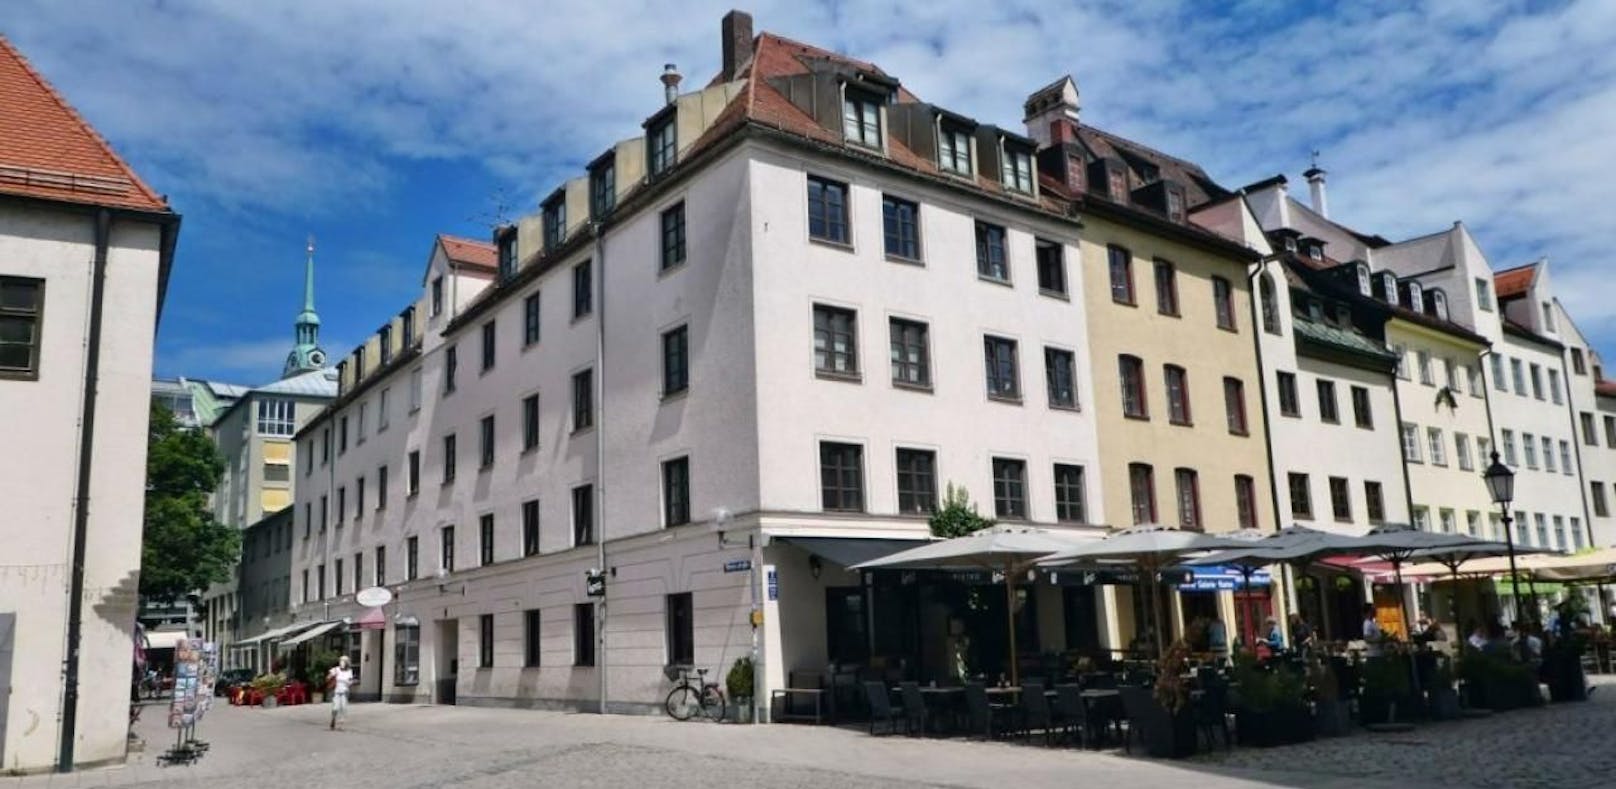 For Sale: Freddie Mercurys Wohnung in München